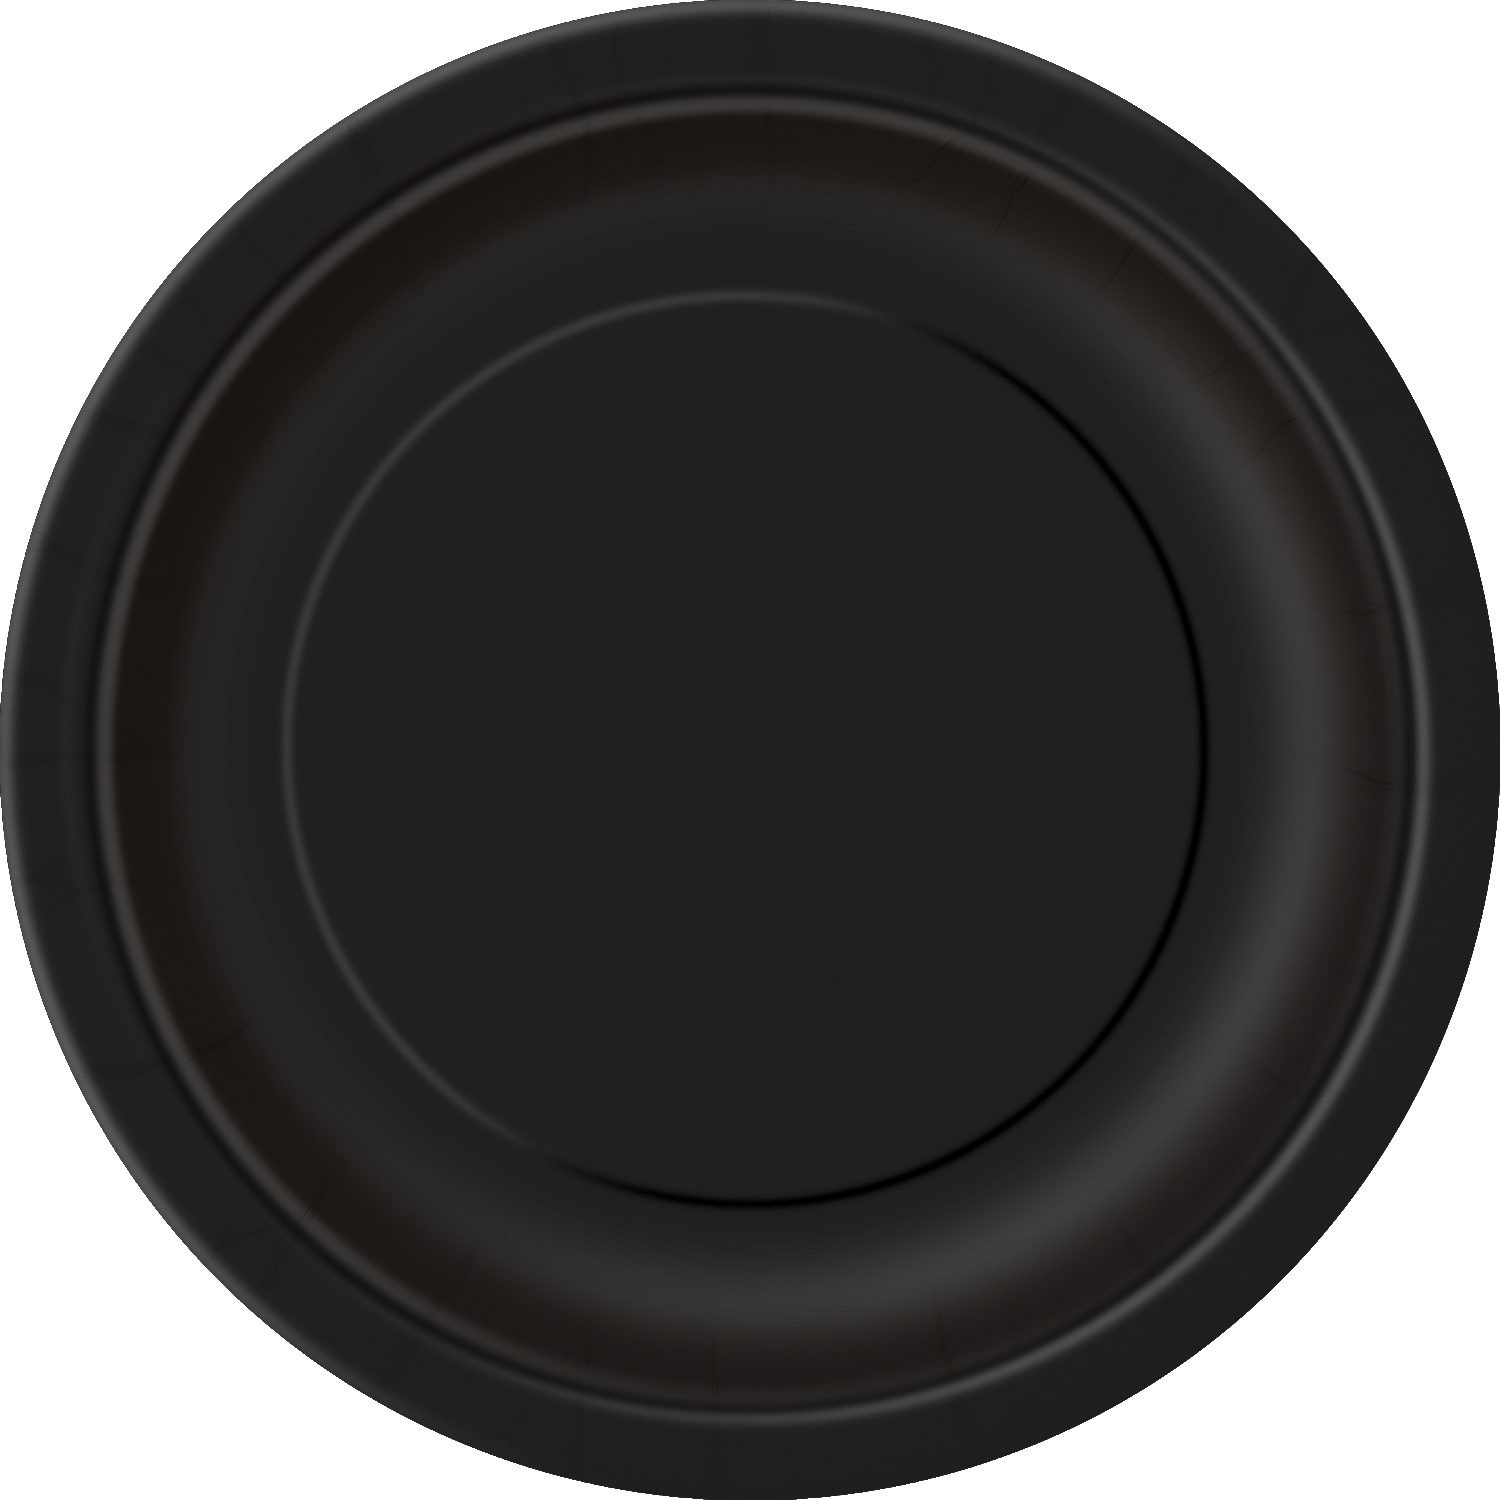 Unique Premium Round Party Paper 9" Dinner Plates, Midnight Black, 8 CT